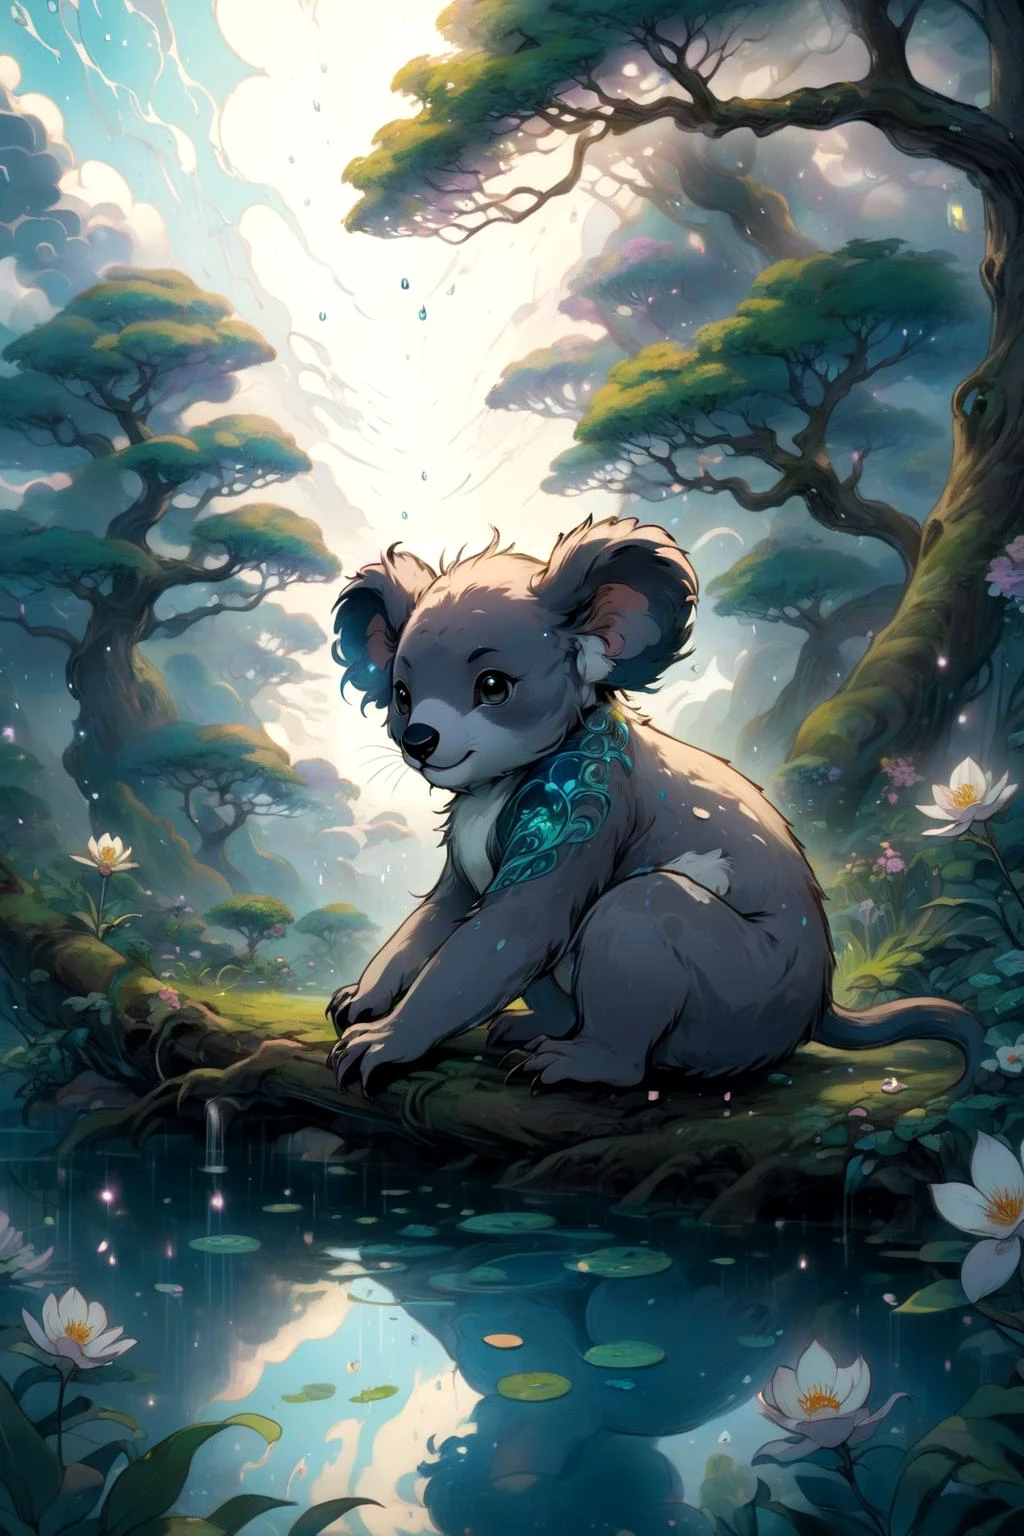 eldritch, Koala, In einem Reich verzauberter Gelassenheit, ein Garten der Ruhe blüht, seine Zen-artige Schönheit vermittelt ein Gefühl des inneren Friedens, Brechung und Zerstreuung durch Regentropfen aus mythischen Wolken 